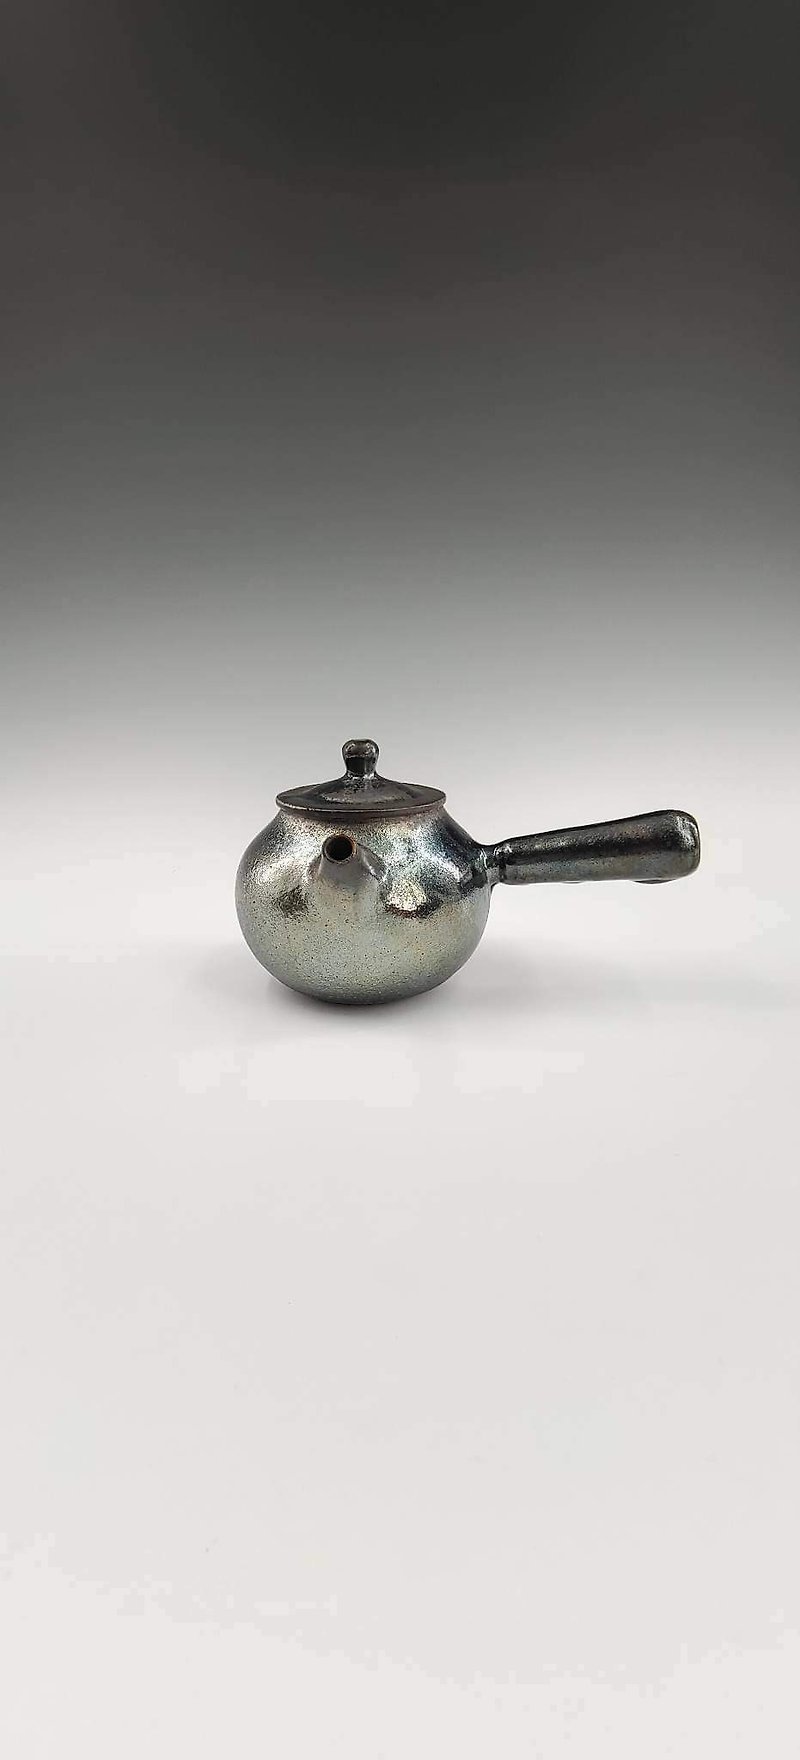 Wood fired iron glaze side handle pot - Teapots & Teacups - Pottery 